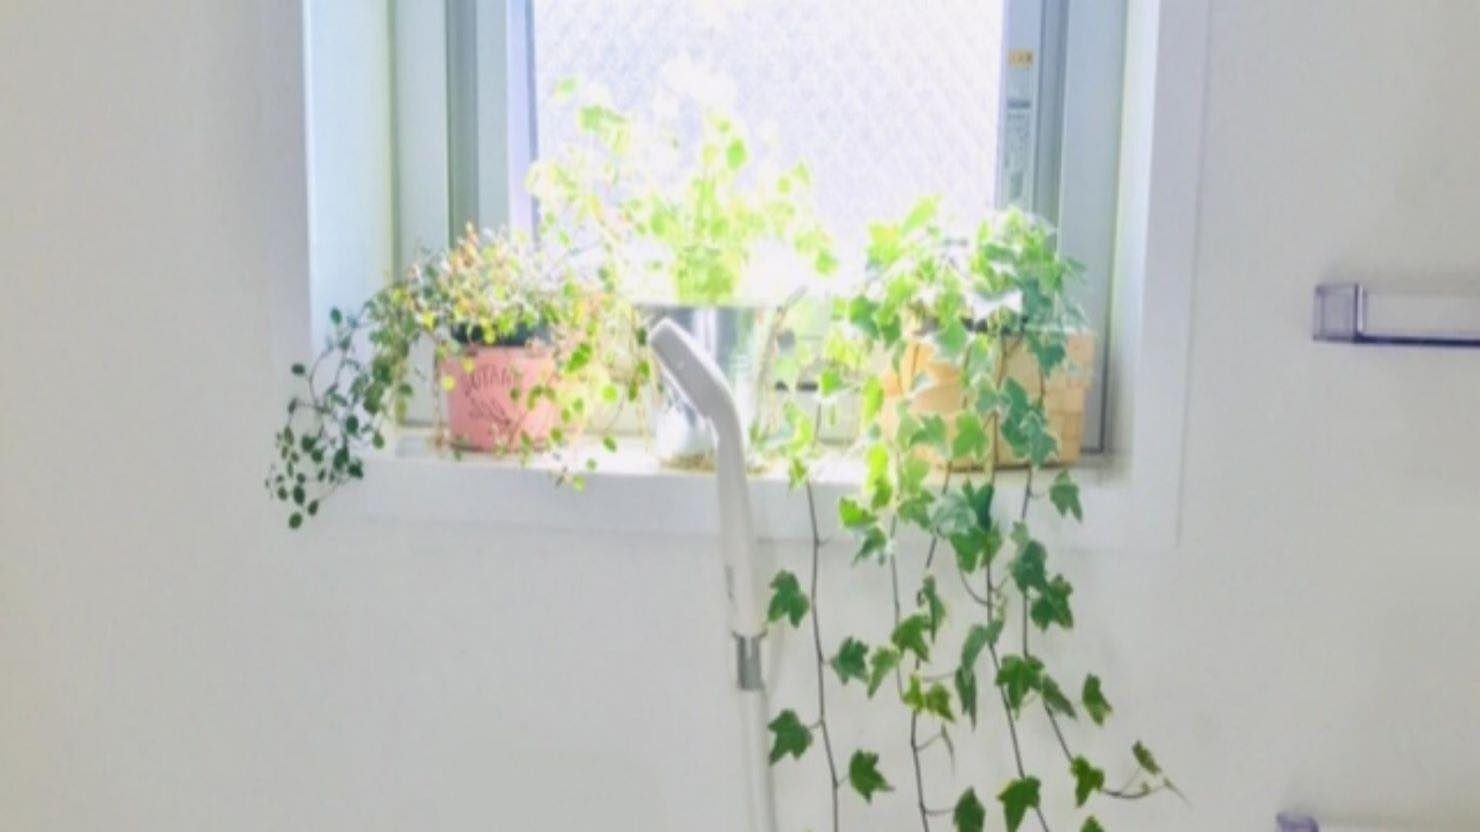 ホームズ 観葉植物 風水でお部屋の運気をアップしよう 植物を選ぶポイントと置き場所とは 暮らし方から物件探し